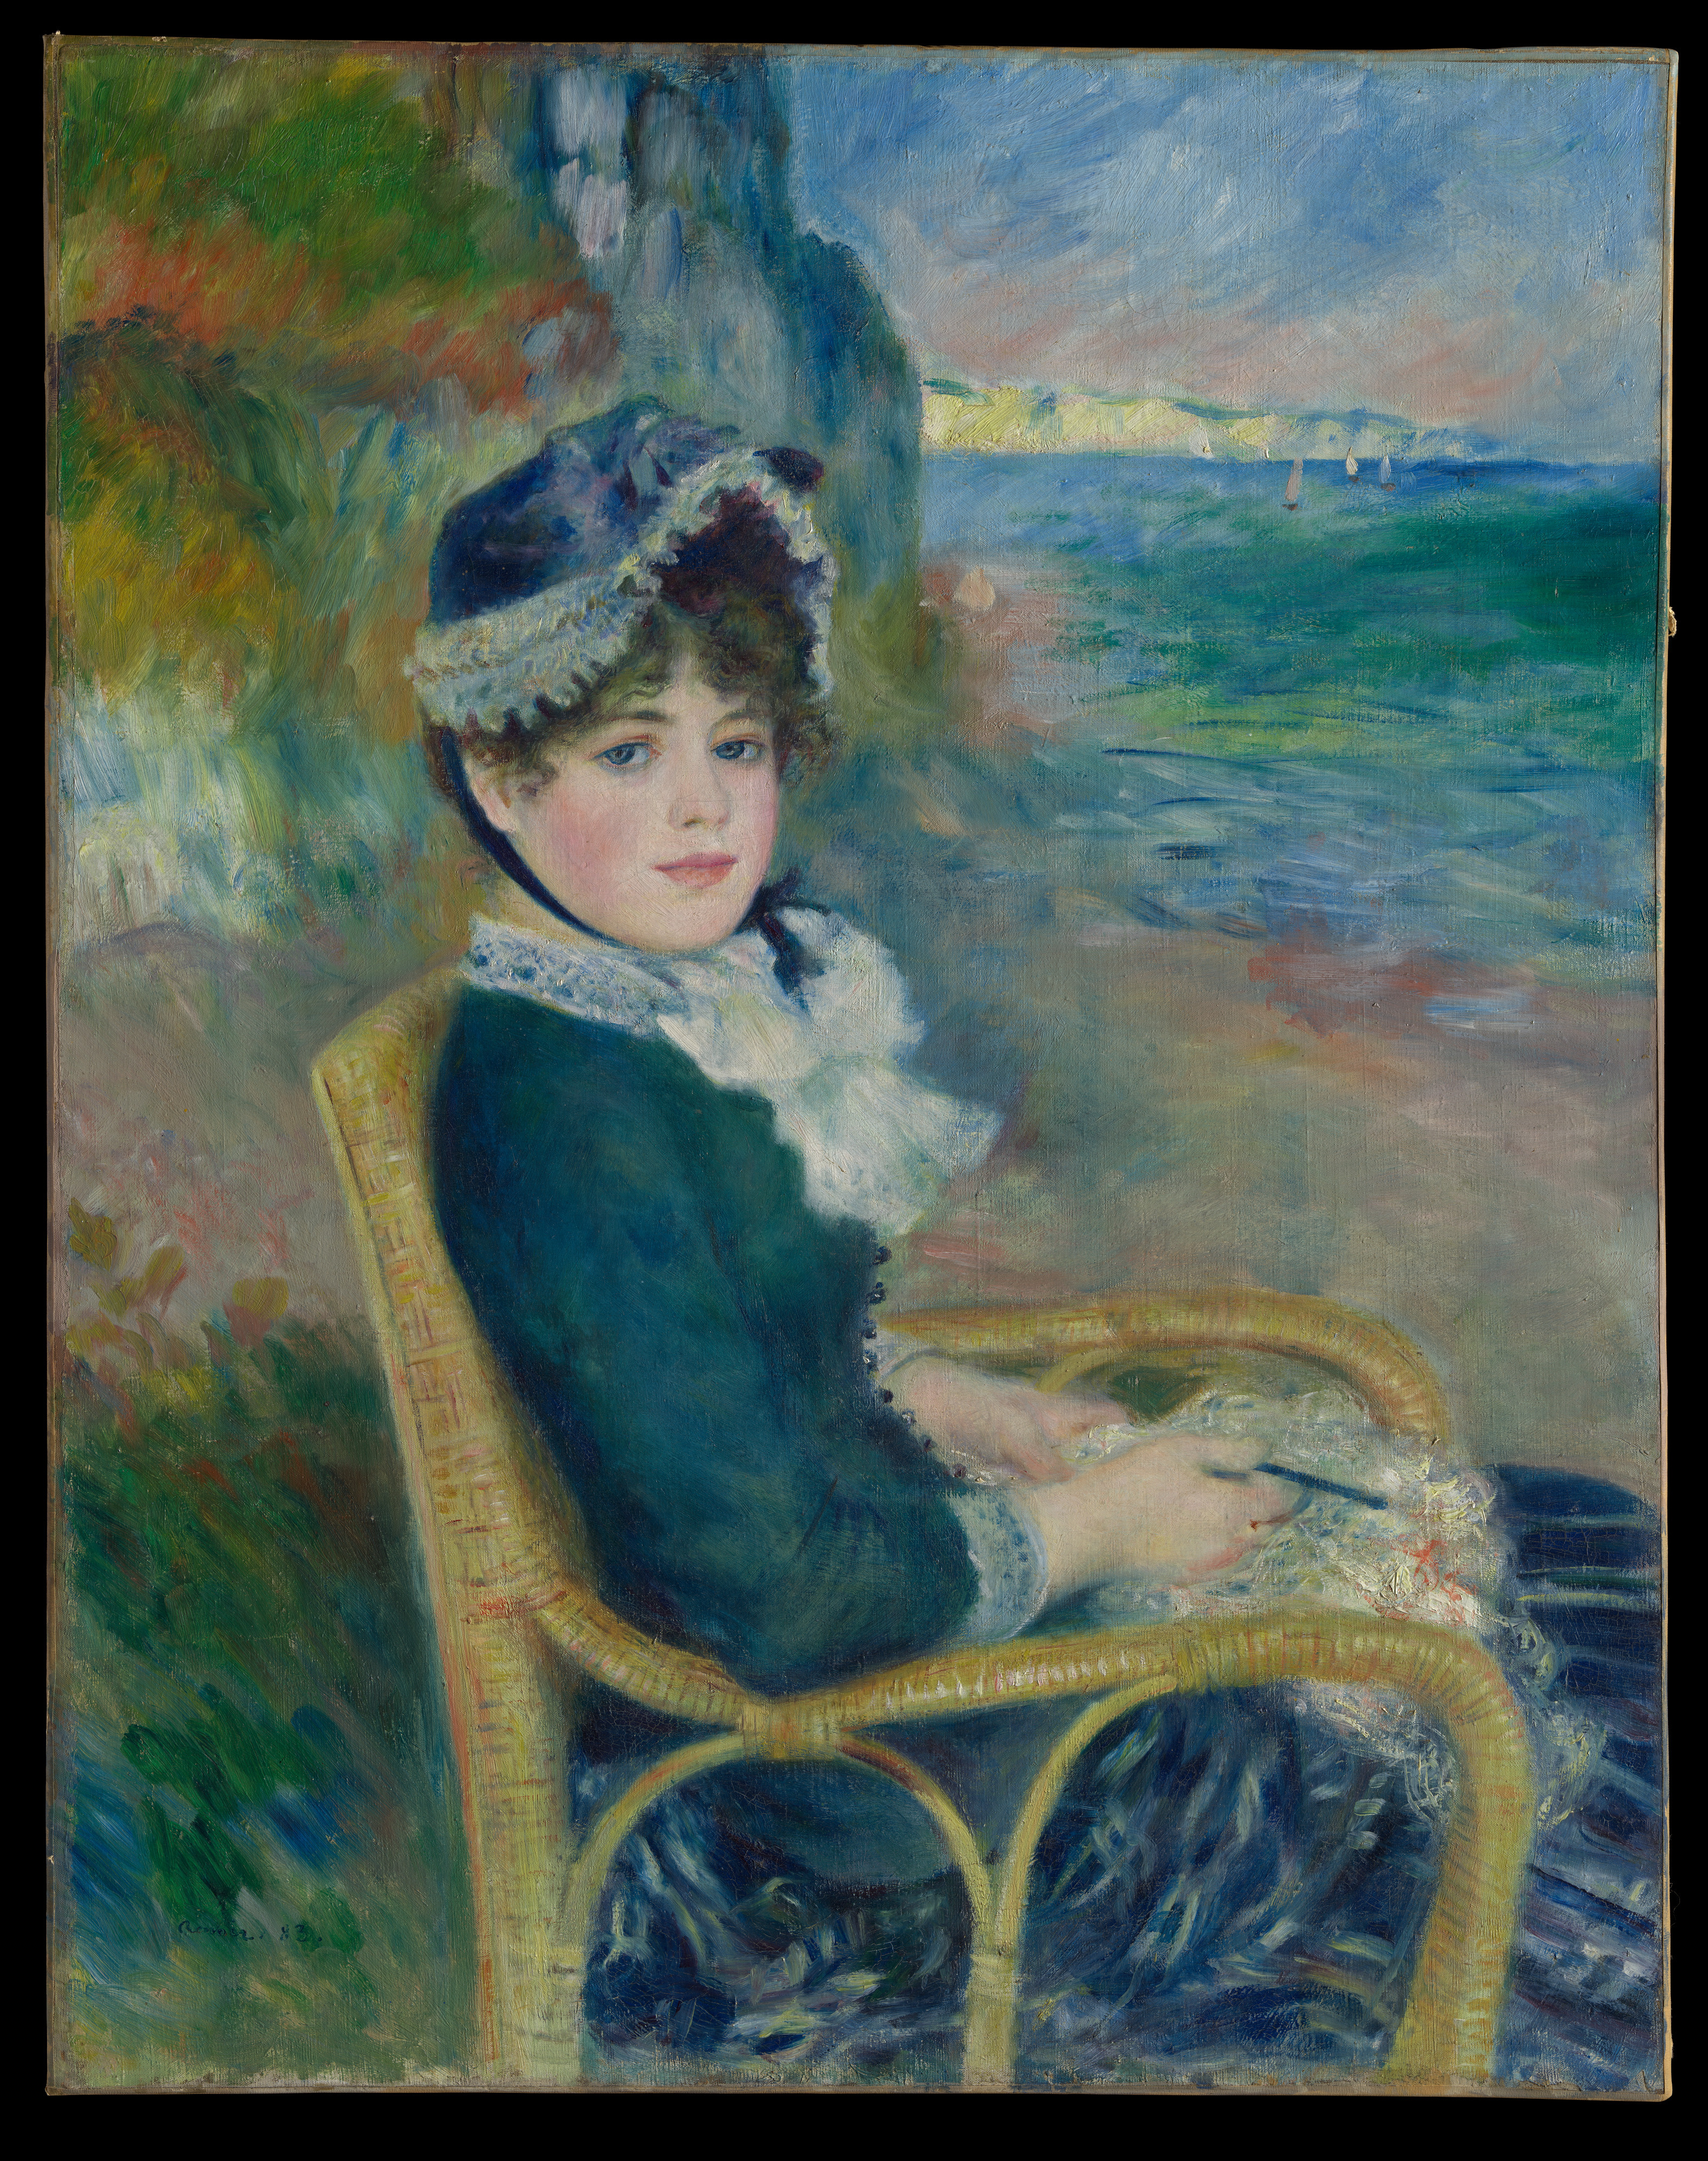 By the Seashore by Auguste Renoir